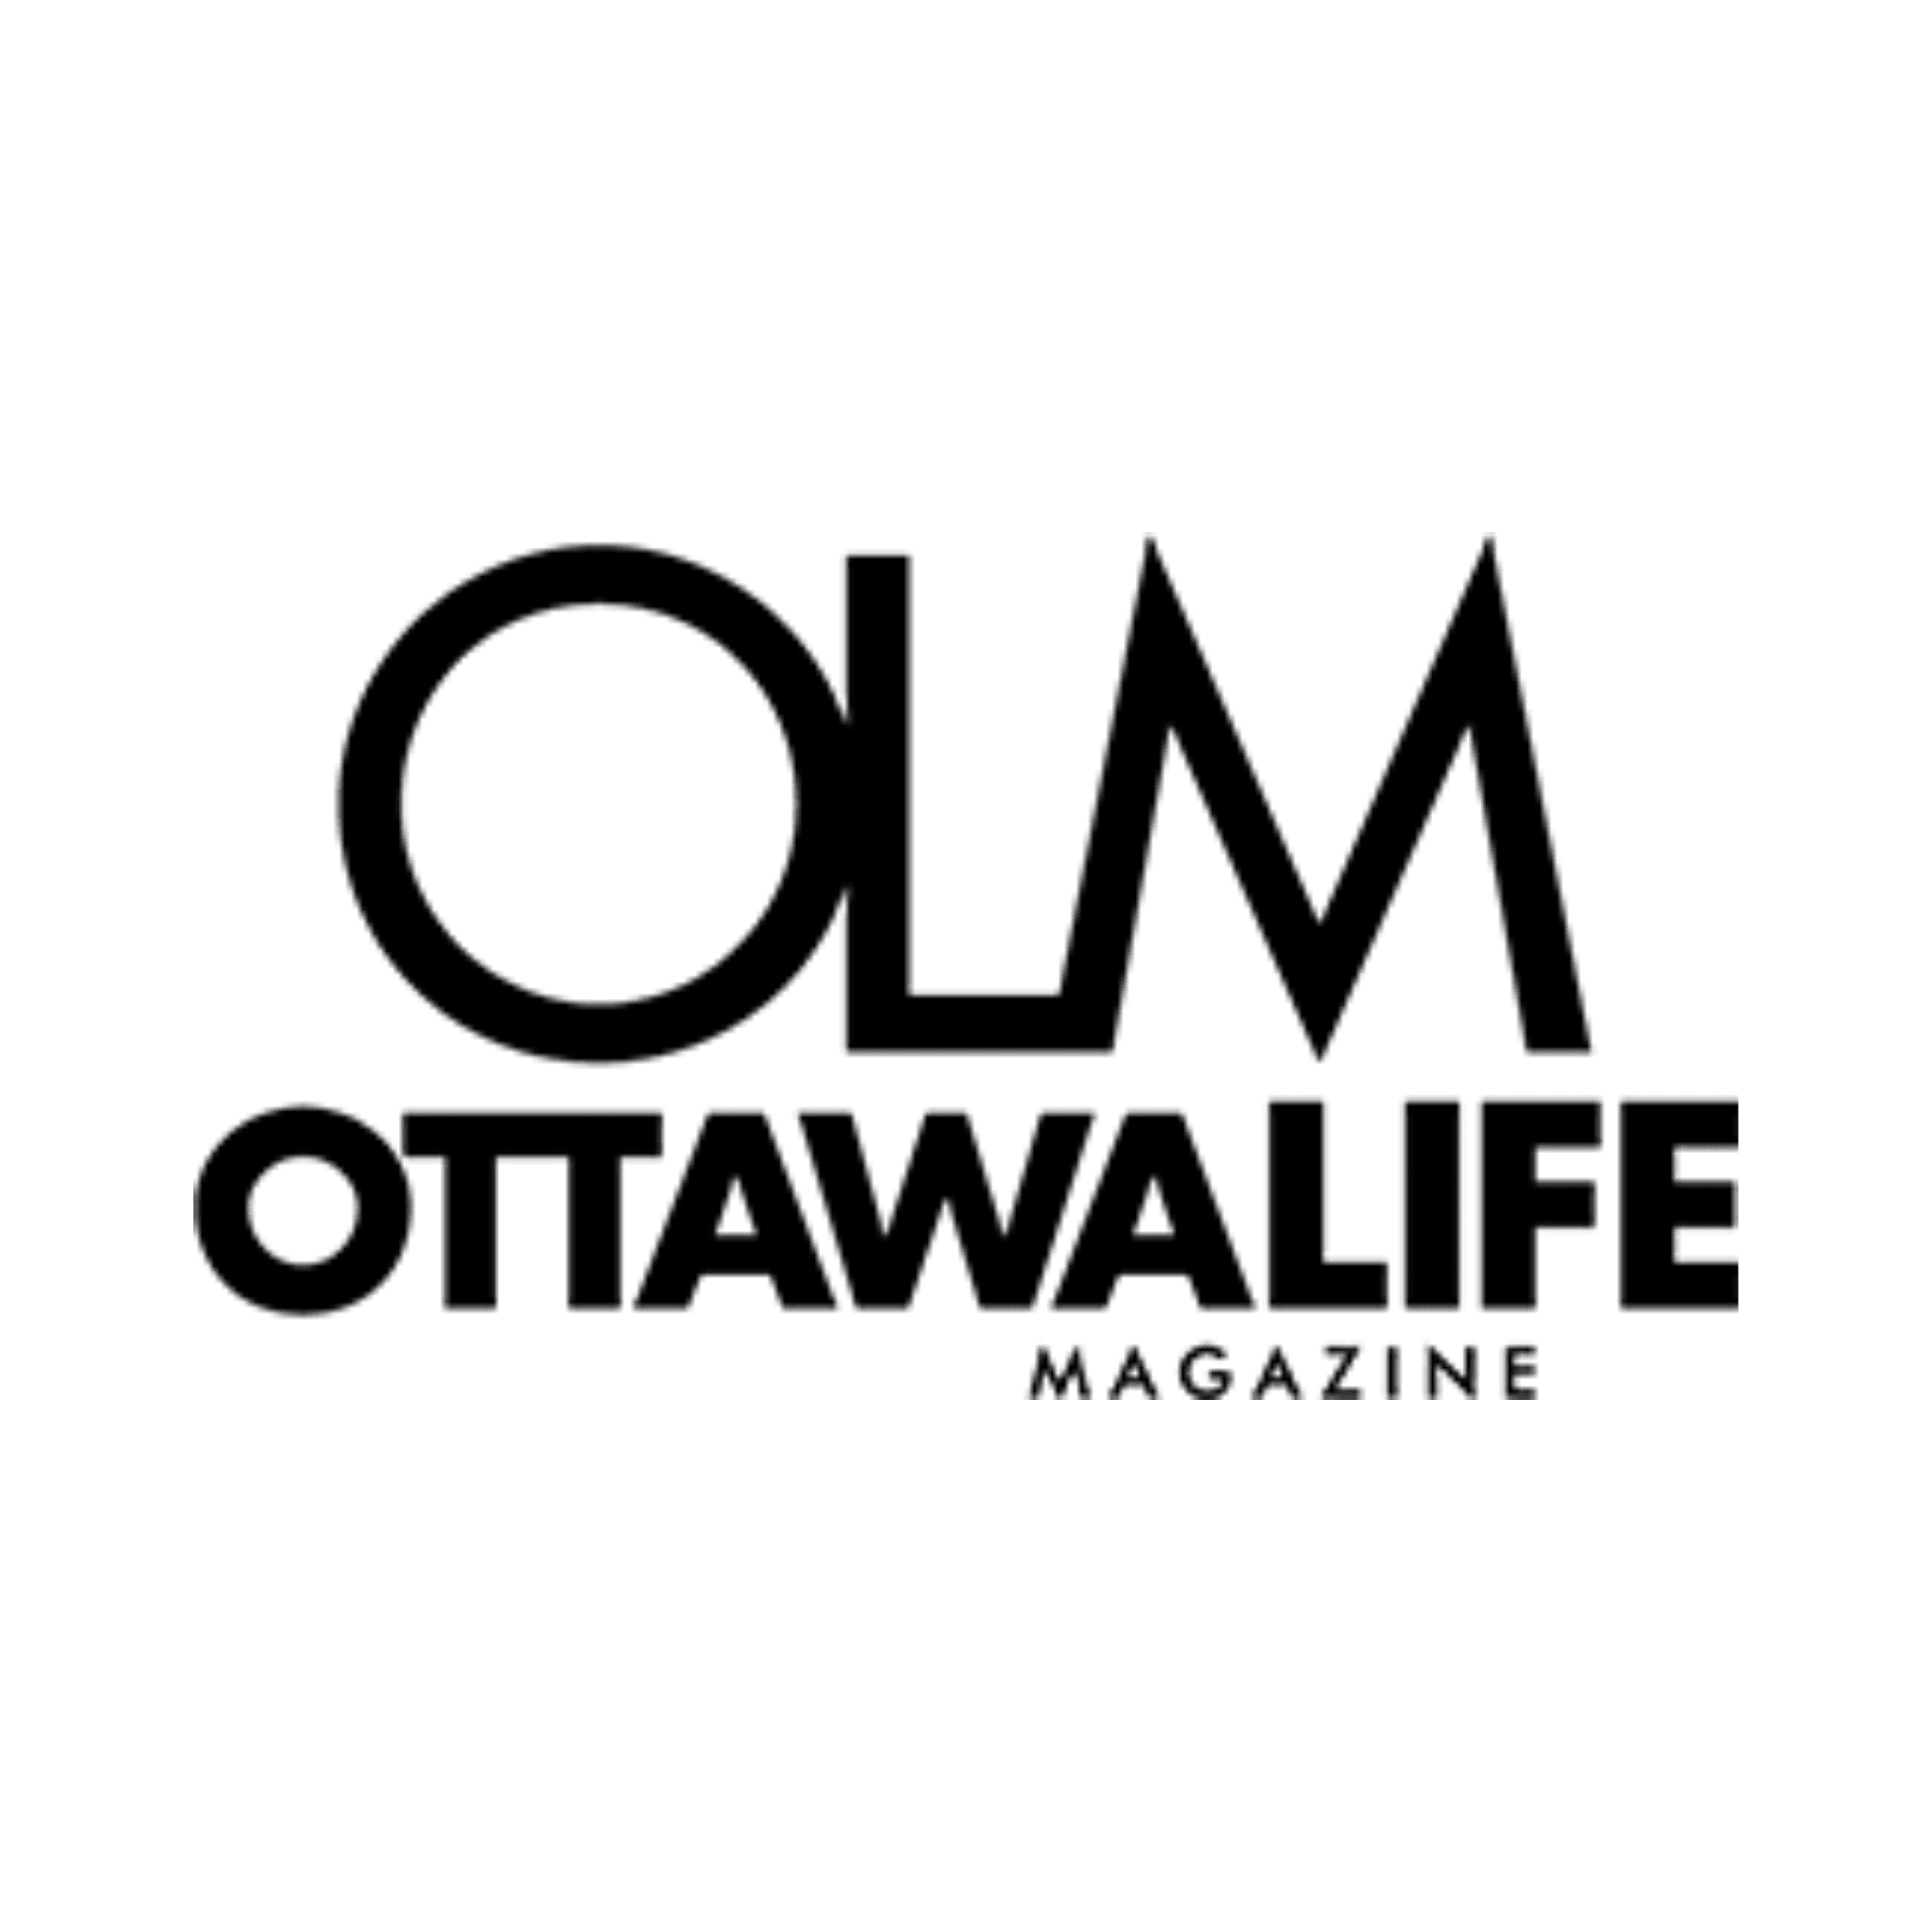 Ottawa Life Magazine